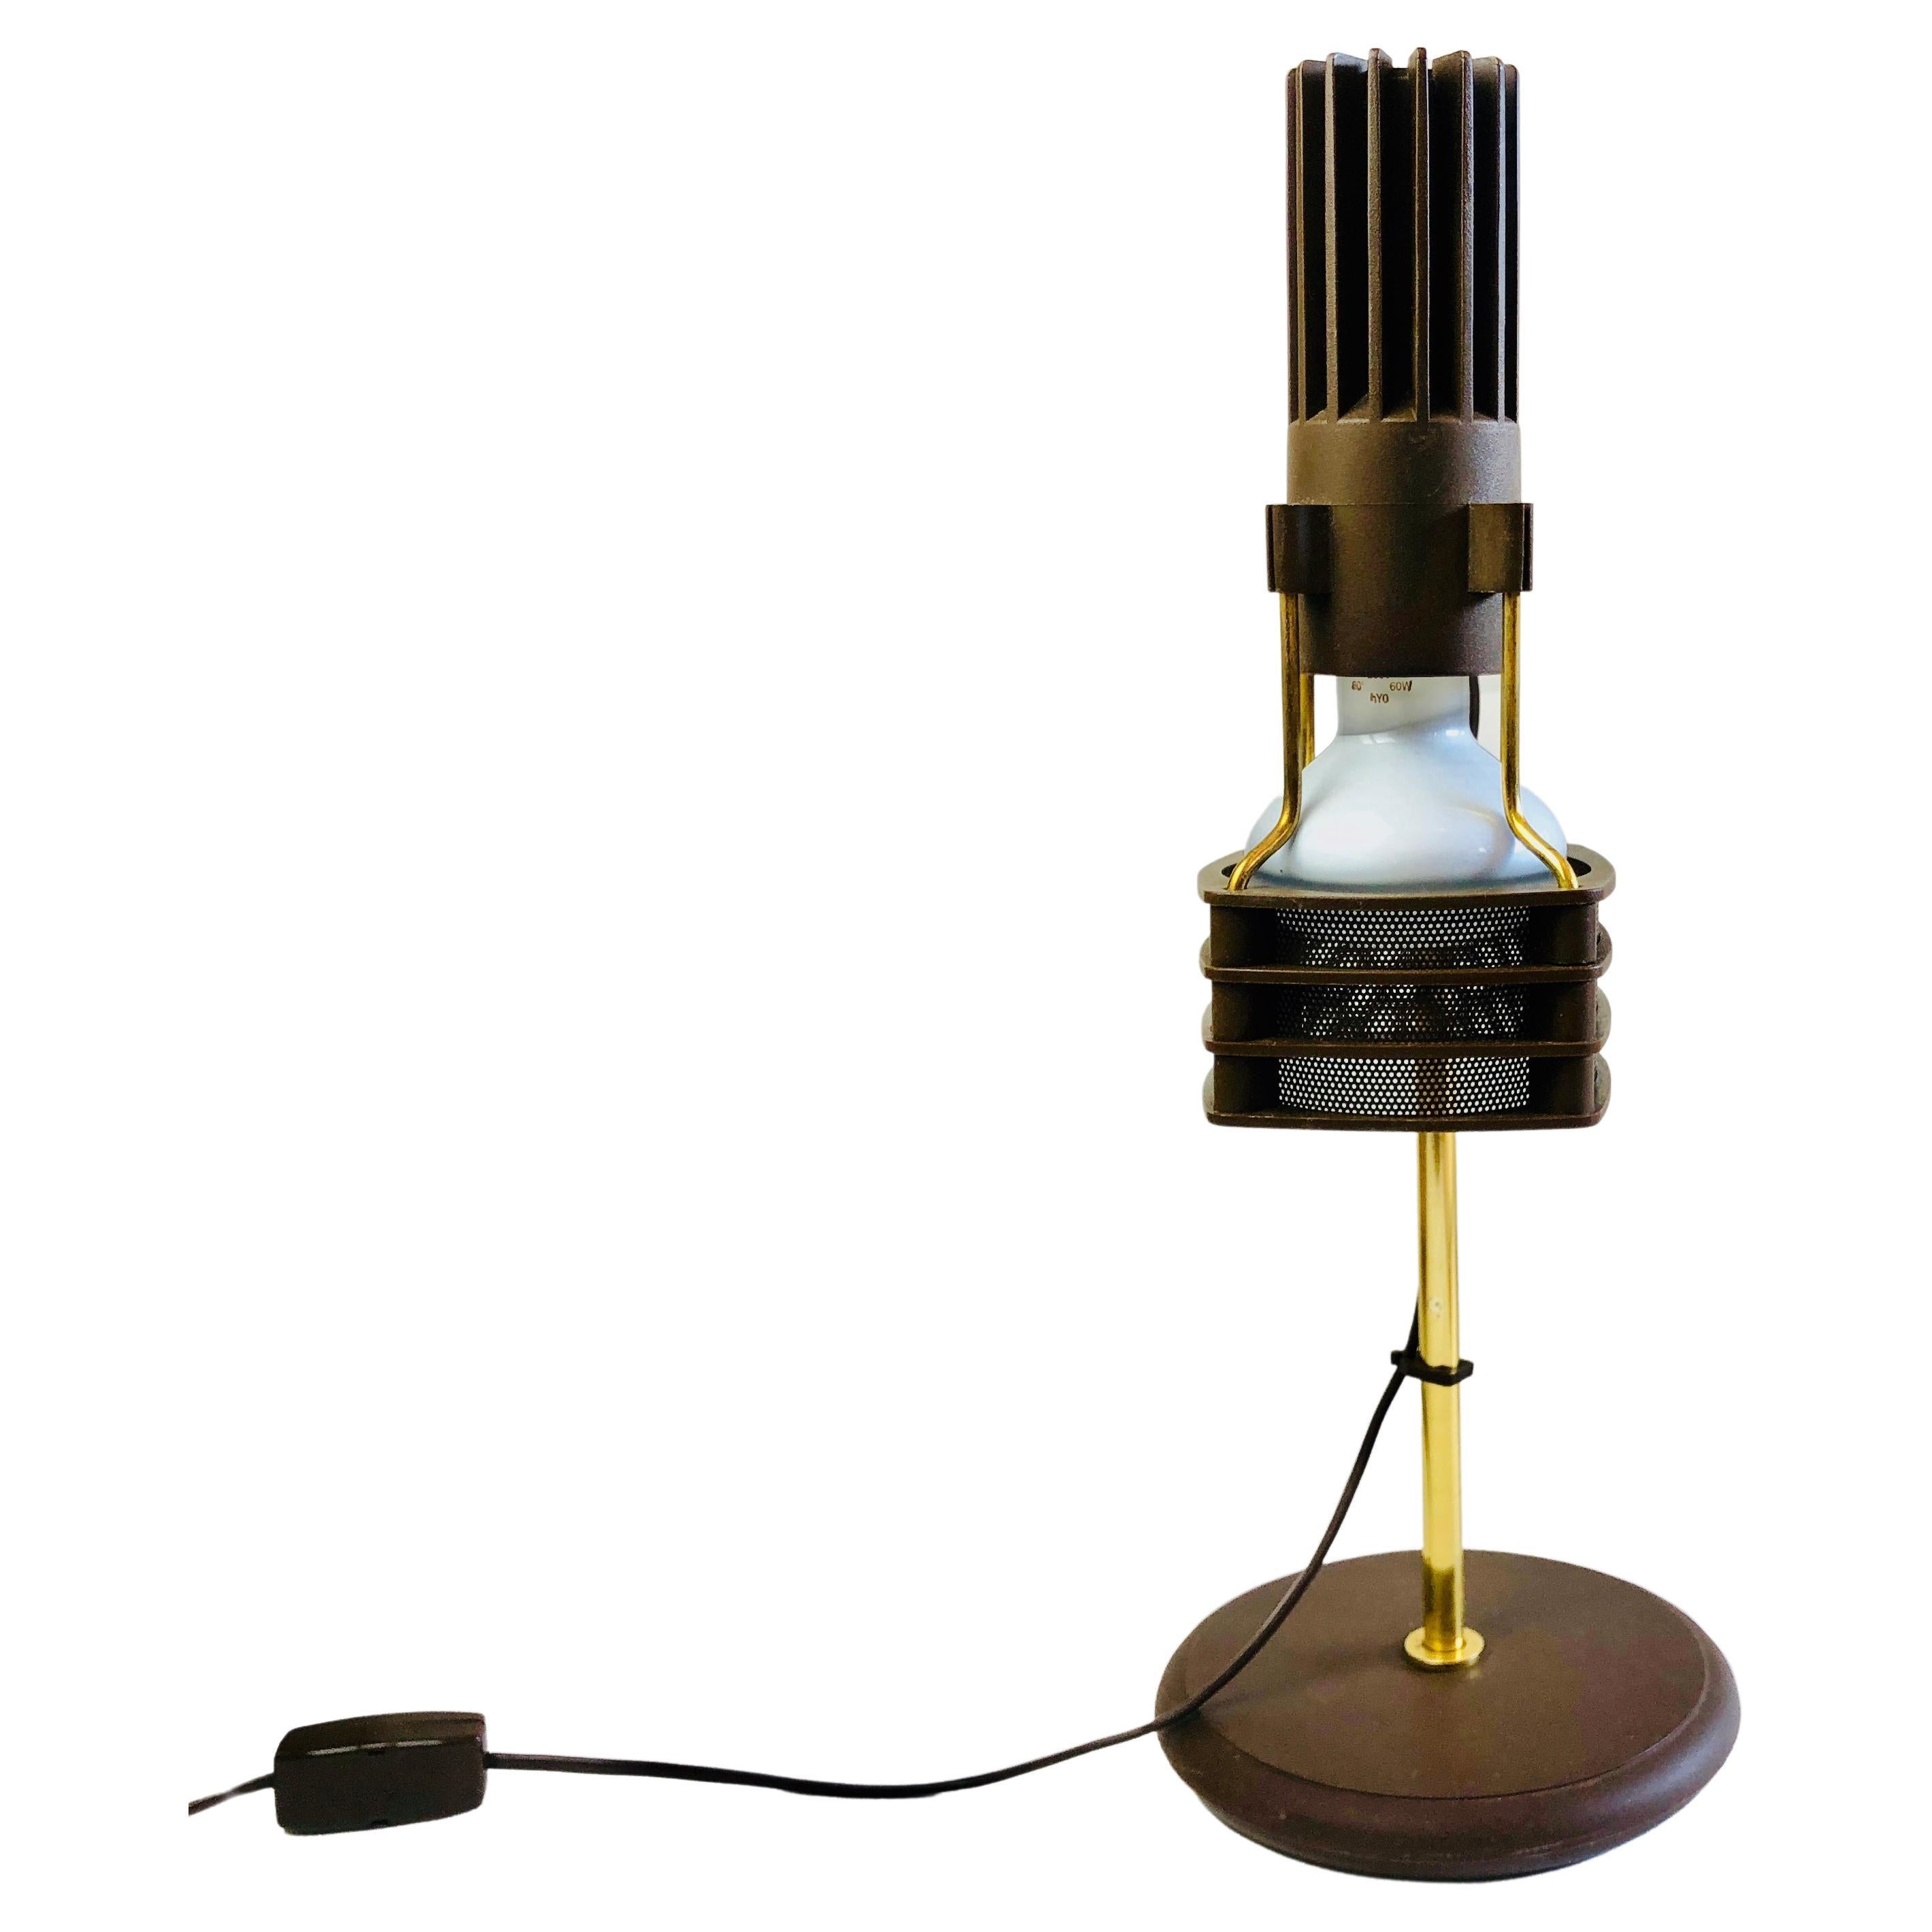 Spanish Schreibtischlampe Von Fase, Spanien. Original 70er Lampe, Braun & Gold For Sale